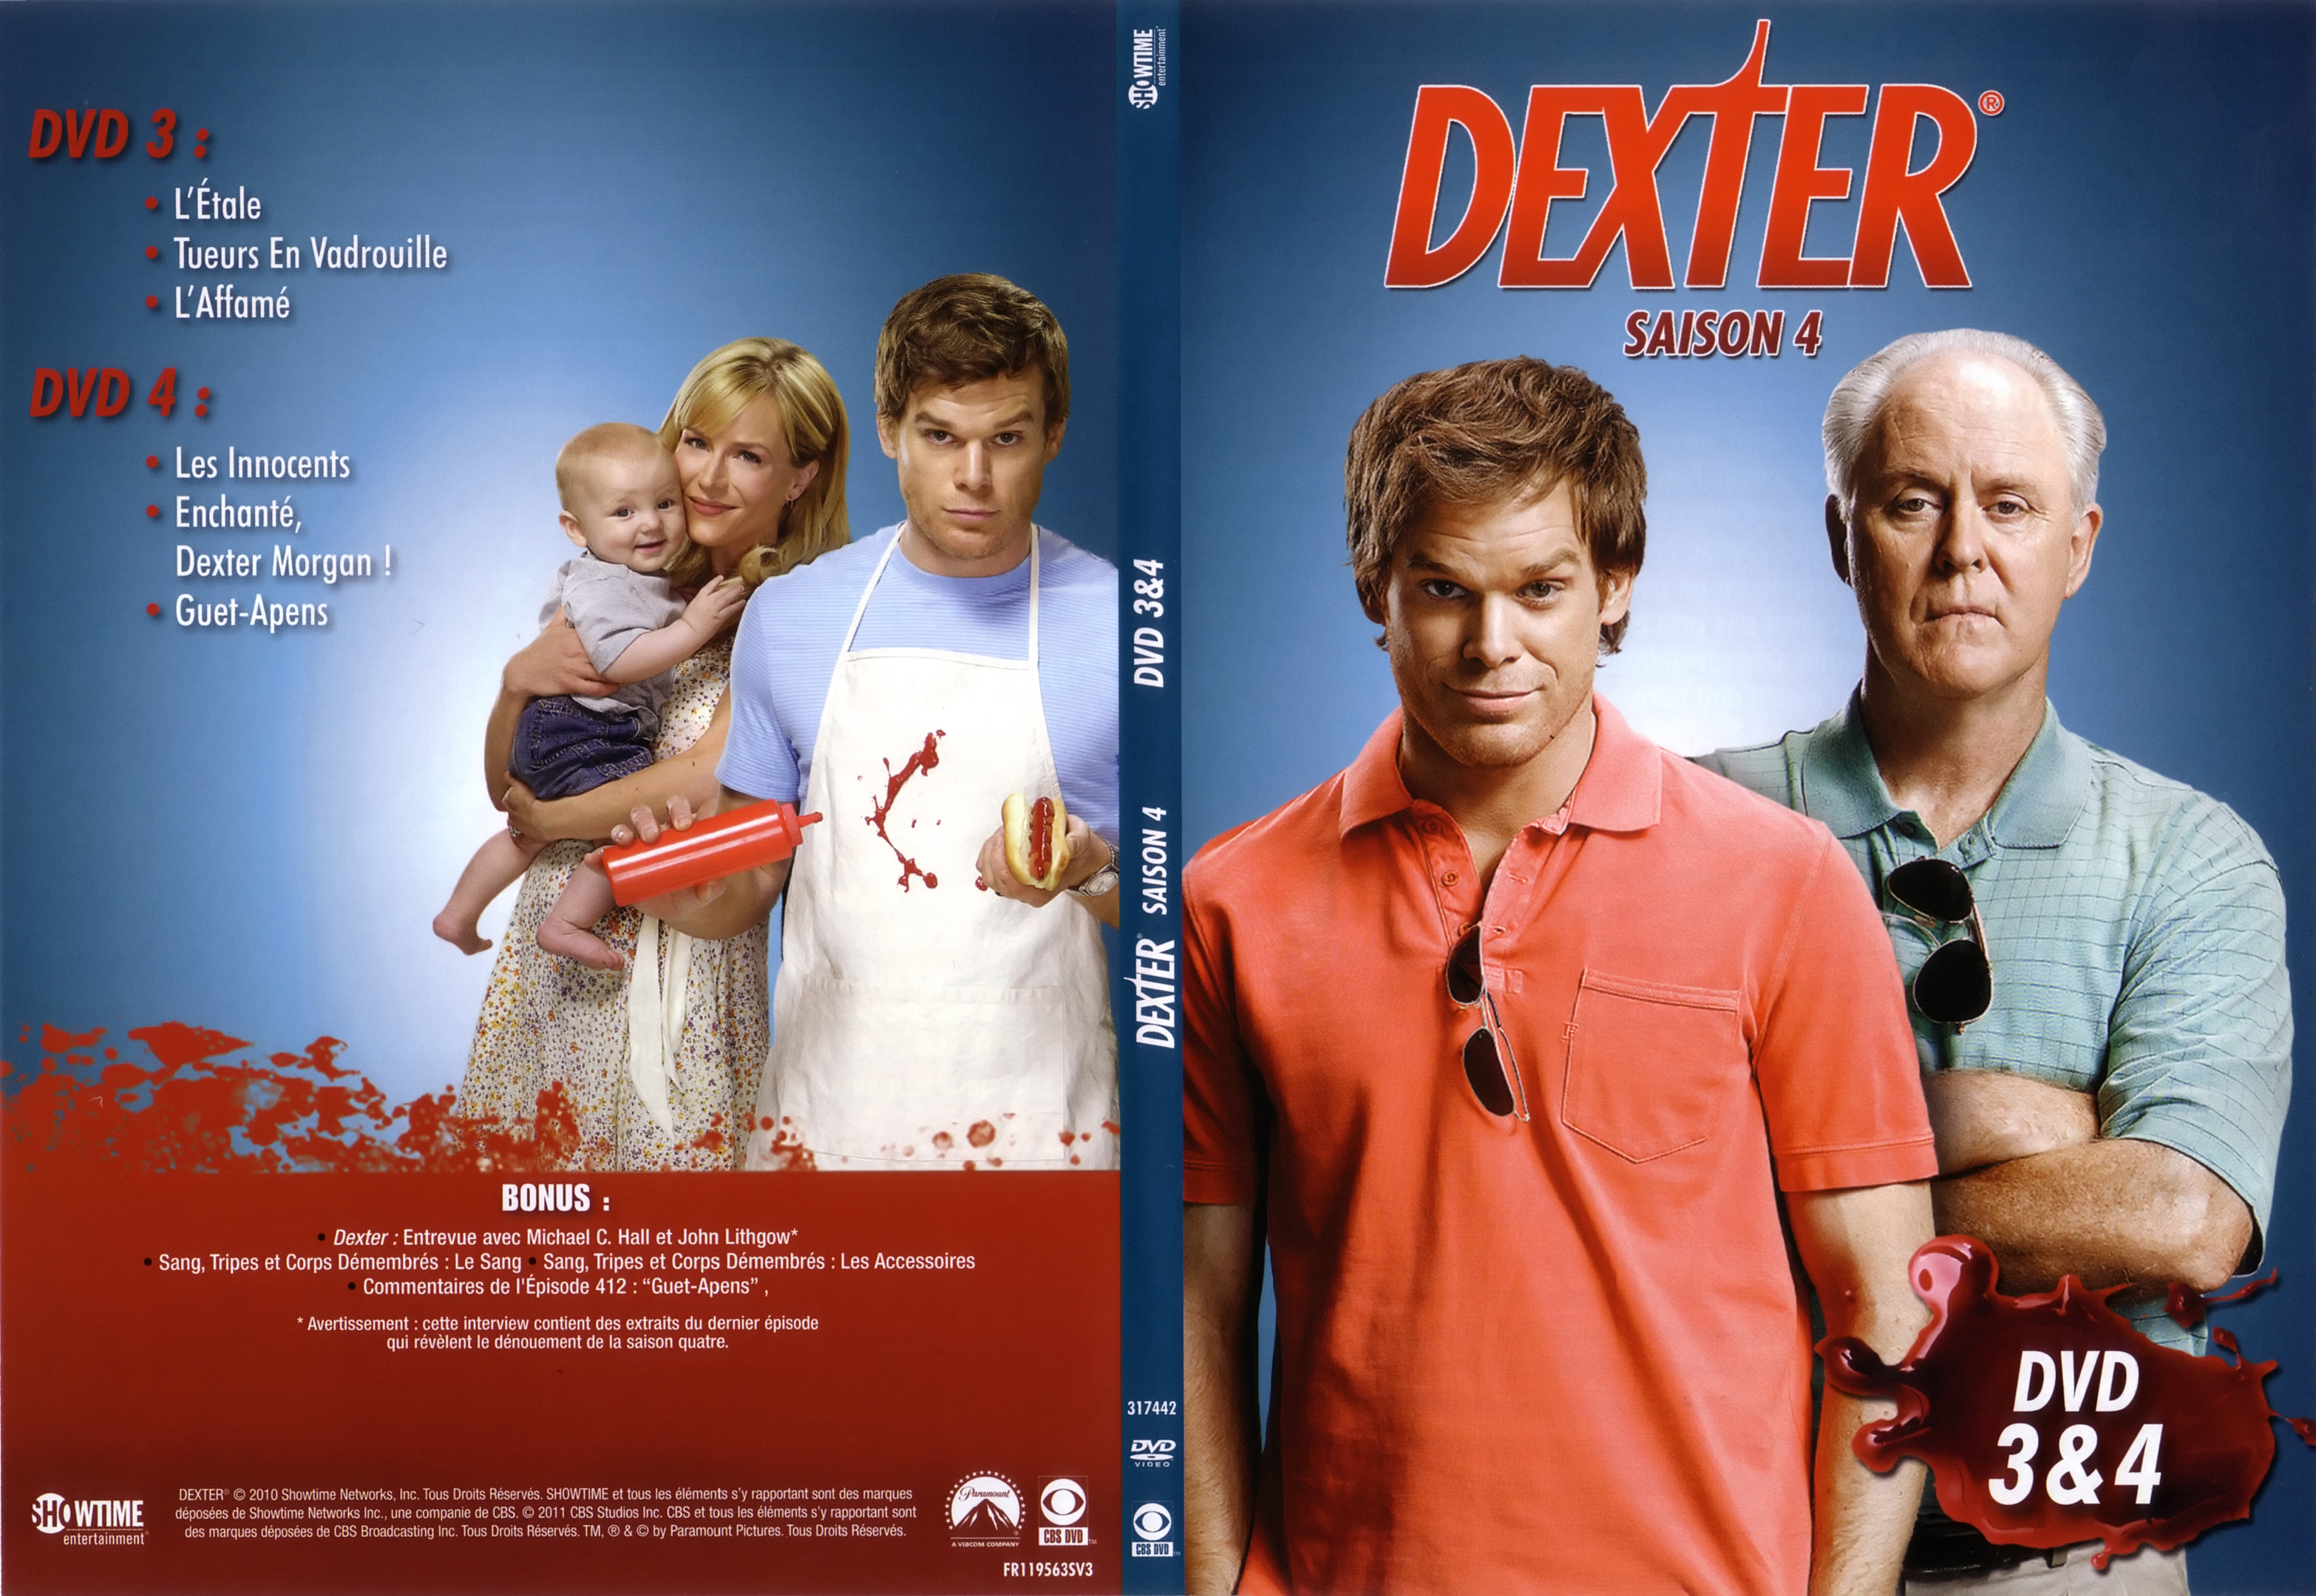 Jaquette DVD Dexter Saison 4 DVD 3